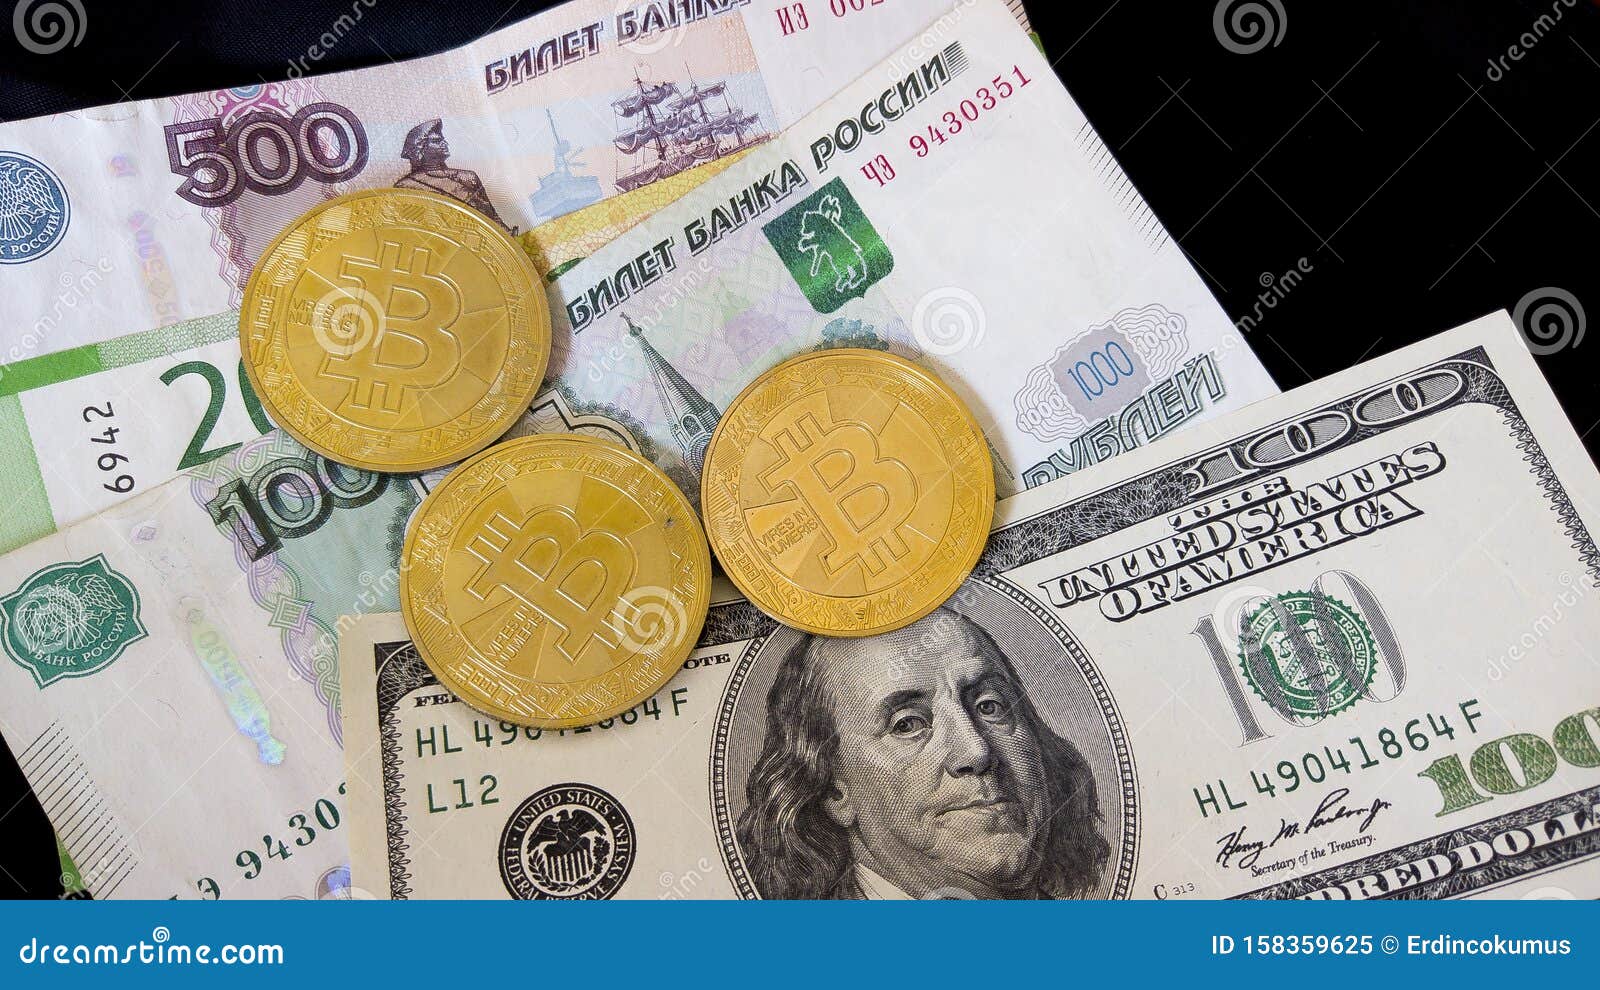 Обмен рубли на биткоины от 100 конференция биткоин москва 2021